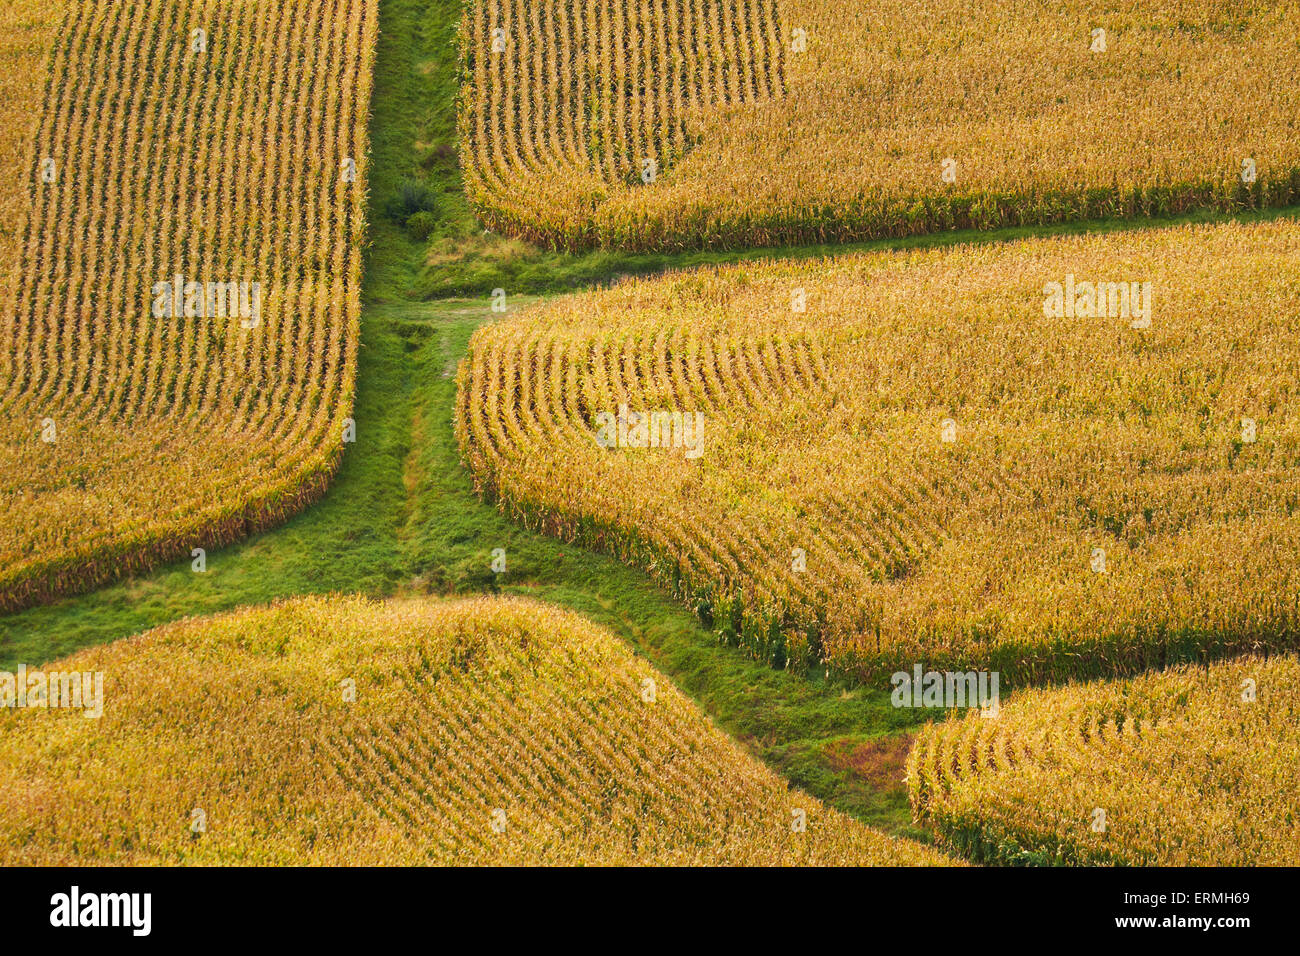 Farm crops, Rukuhia, near Hamilton, Waikato, North Island, New Zealand - aerial Stock Photo